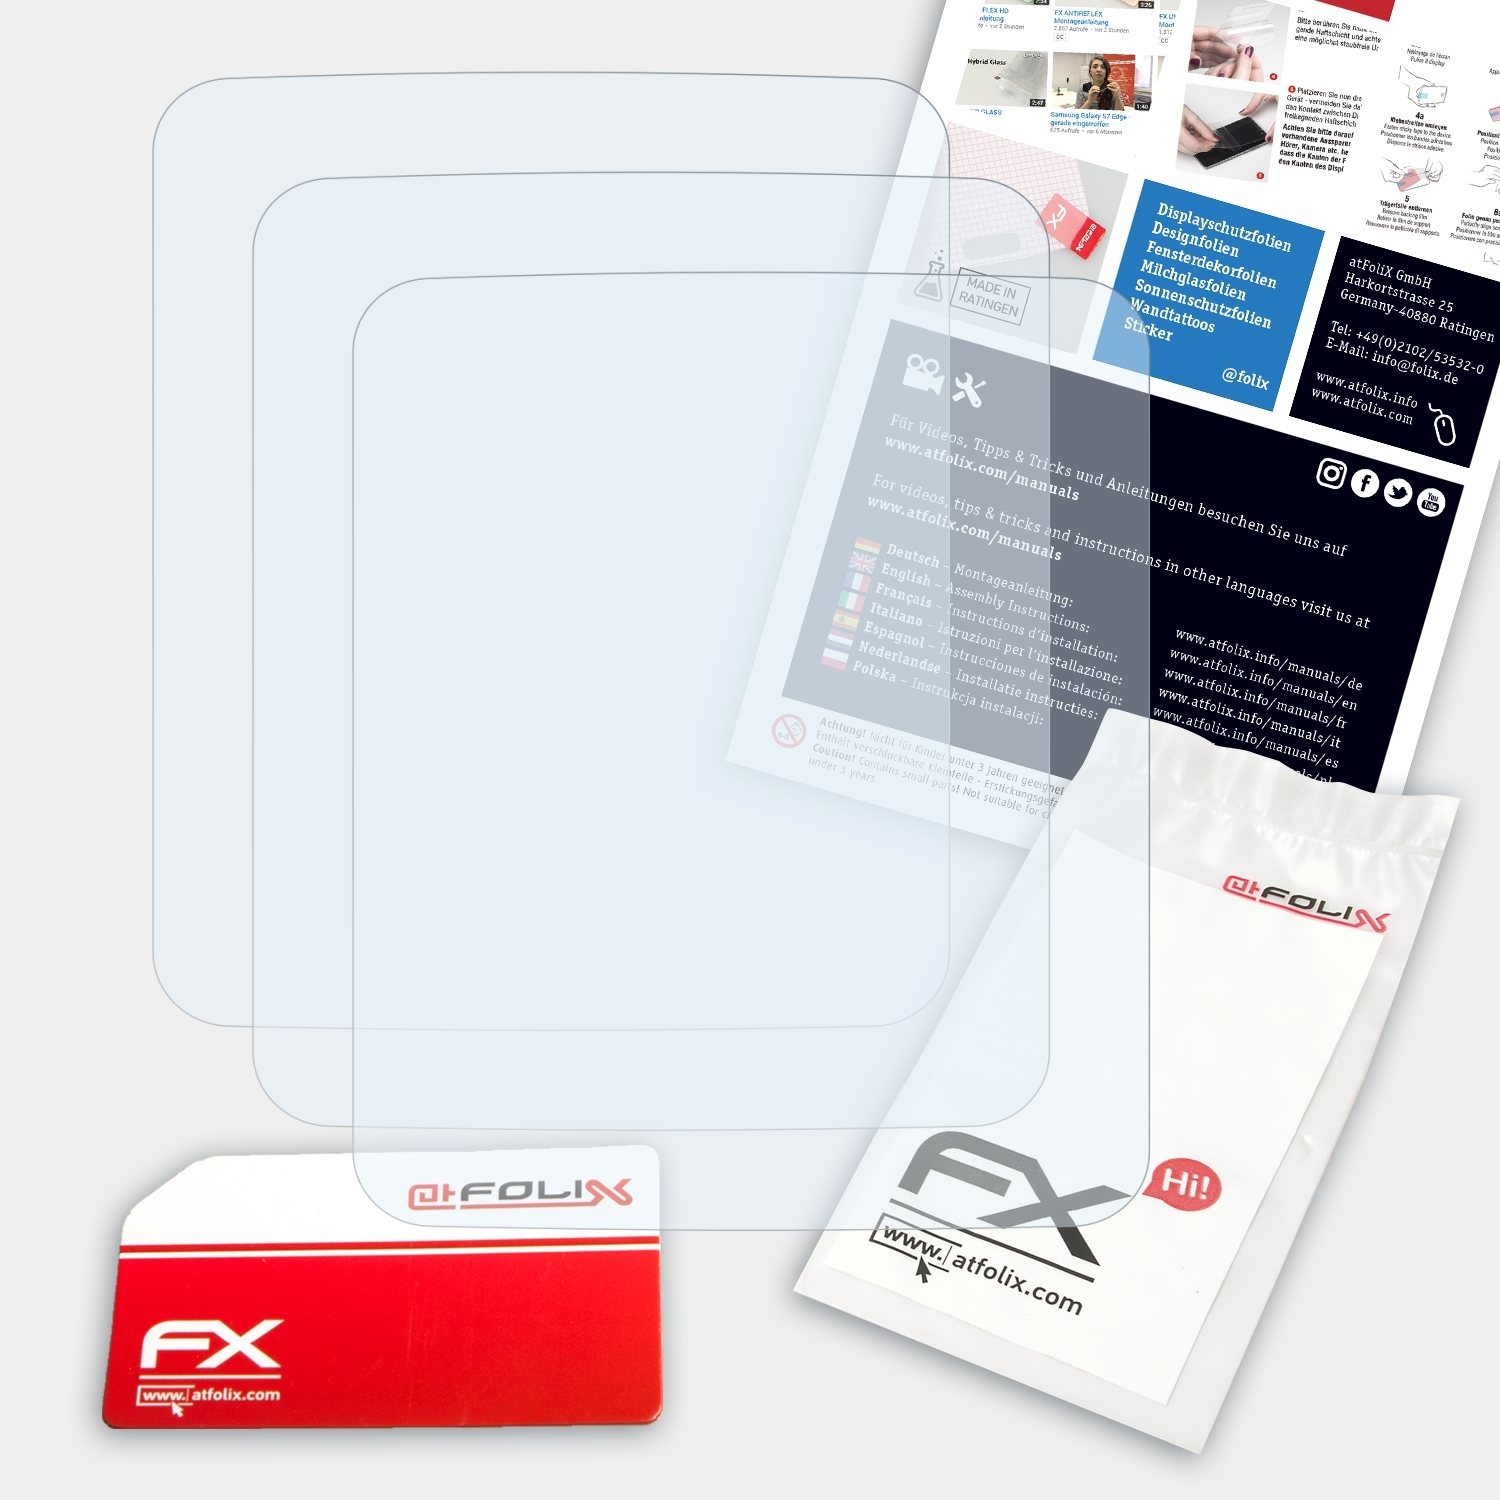 Garmin FX-Clear ATFOLIX Displayschutz(für inReach 3x Mini 2)